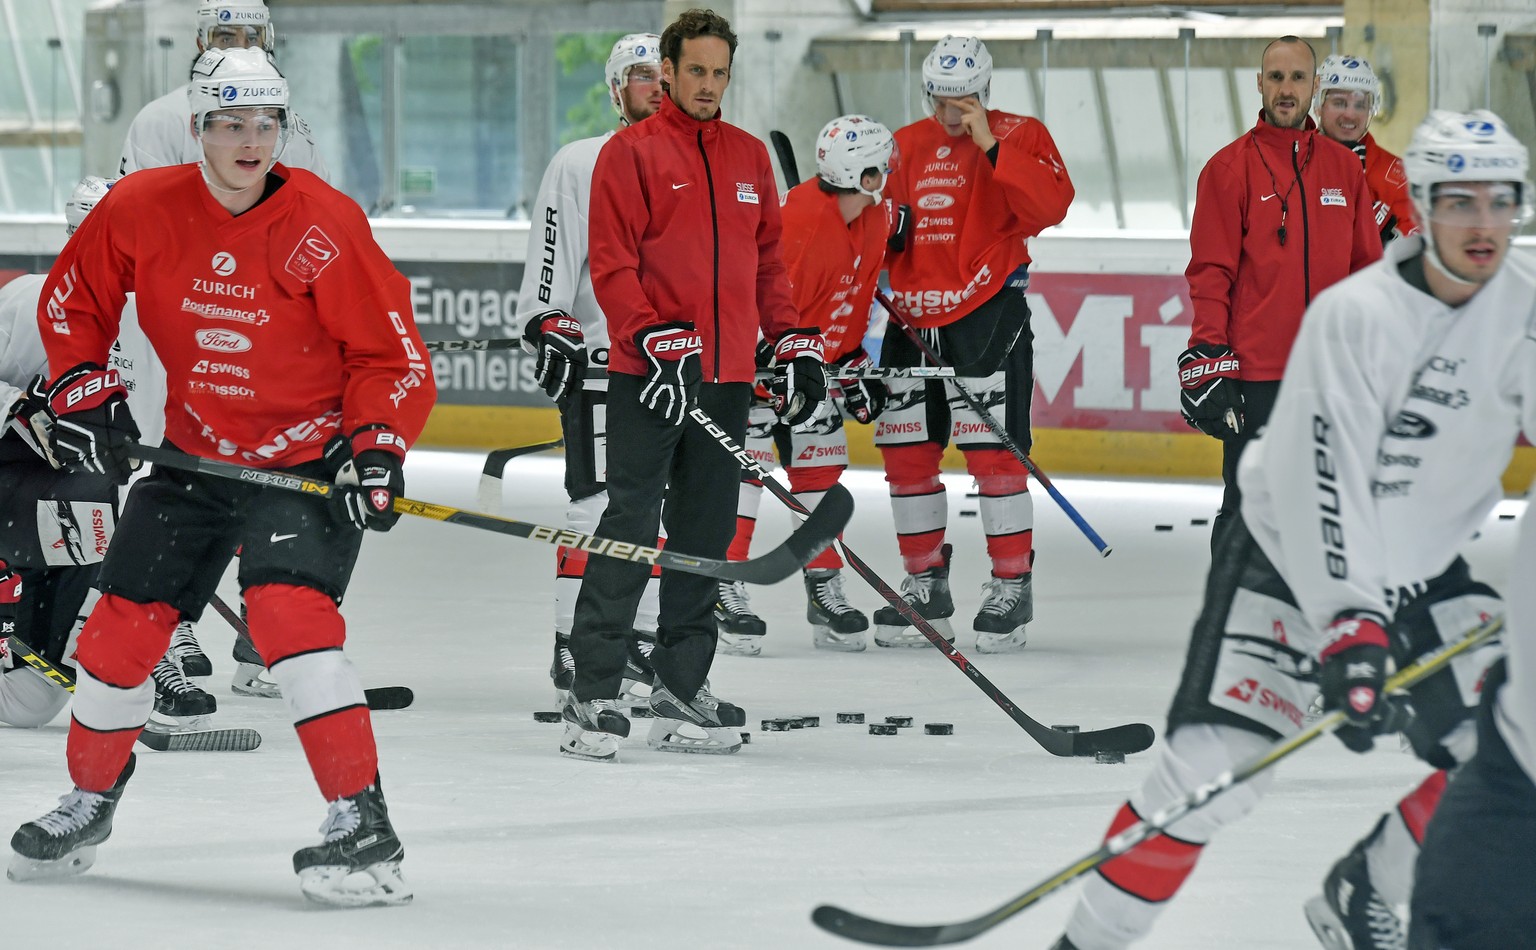 Headcoach Patrick Fischer beim Training mit der Schweizer Eishockeynationalmannschaft in Zuerich am Montag, 30. April 2018. (KEYSTONE/Walter Bieri)